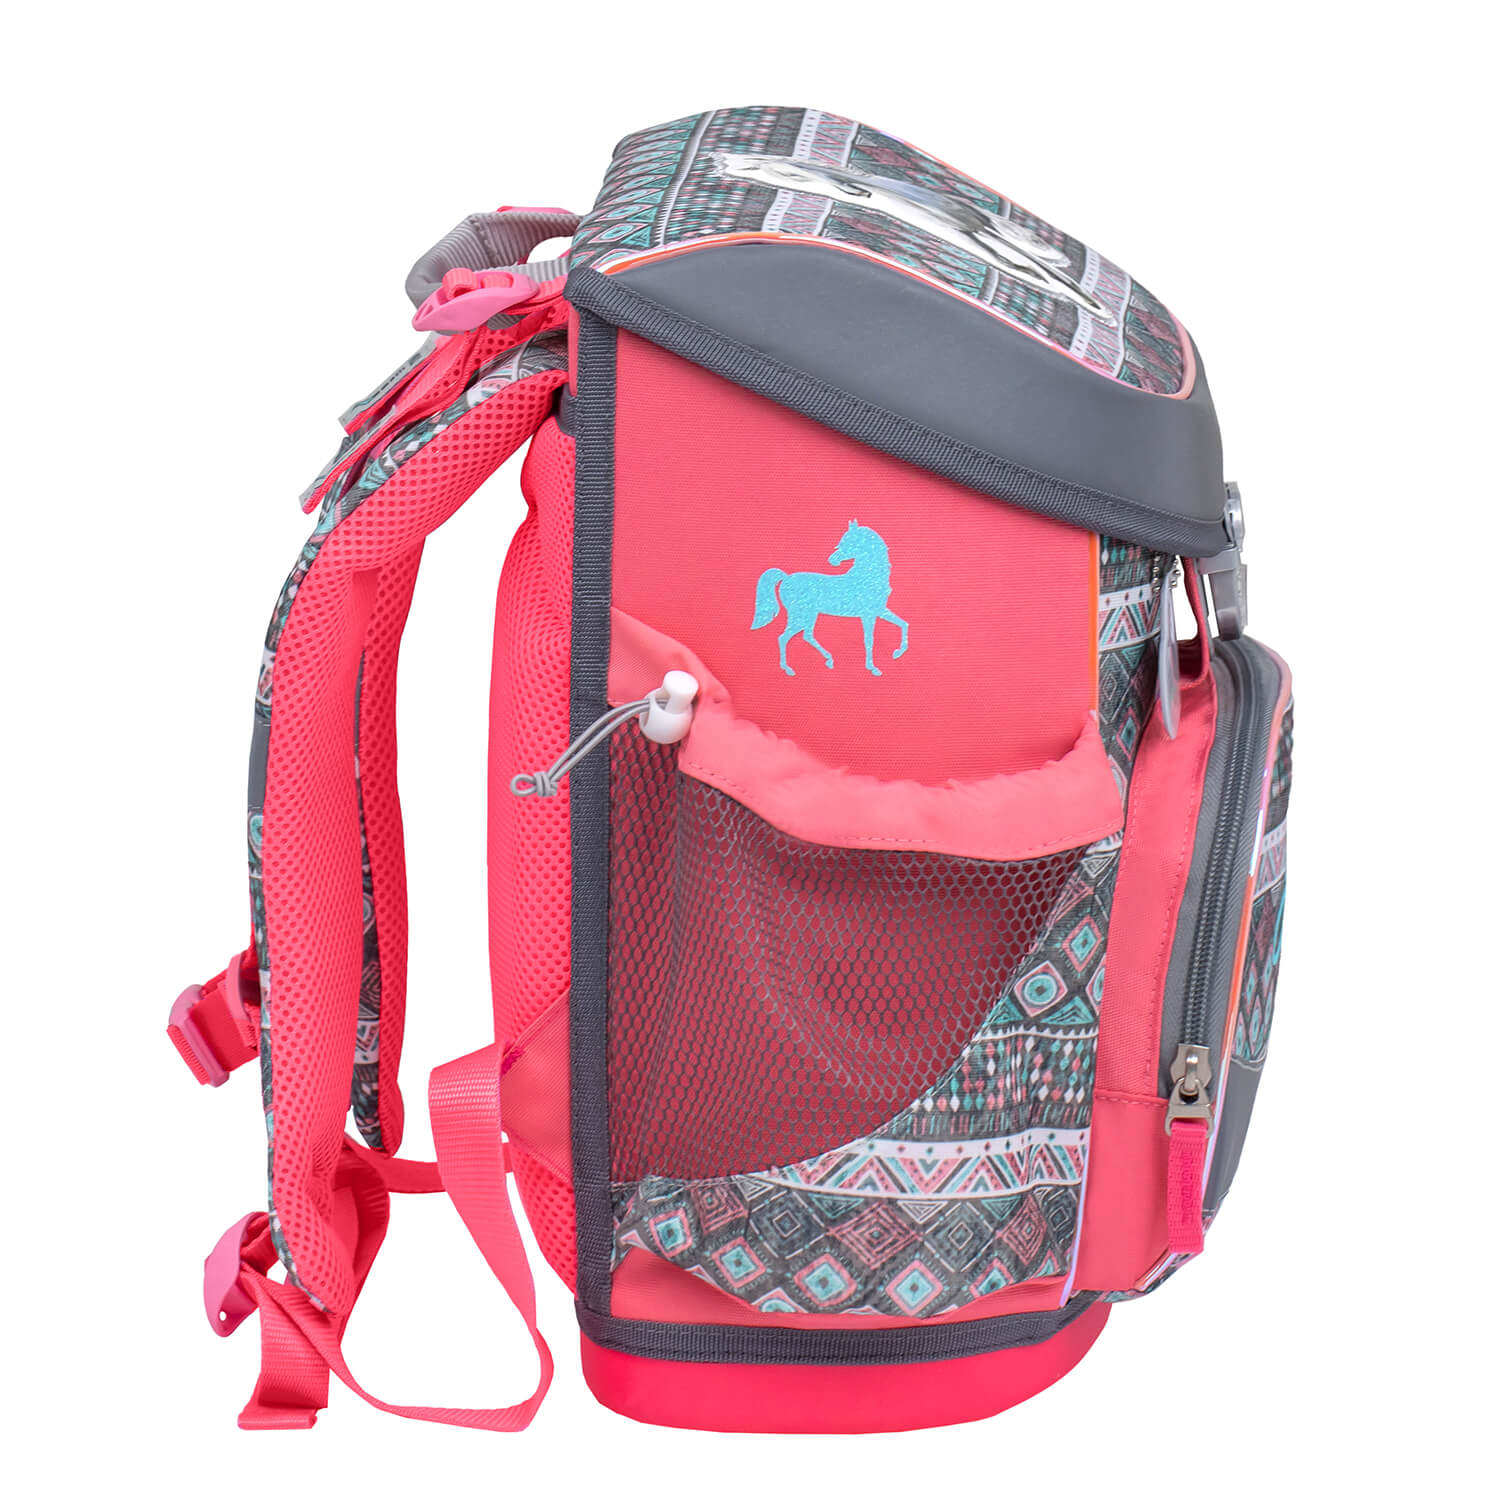 Mini-Fit Horse Aruba Blue schoolbag set 5 pcs with GRATIS keychain